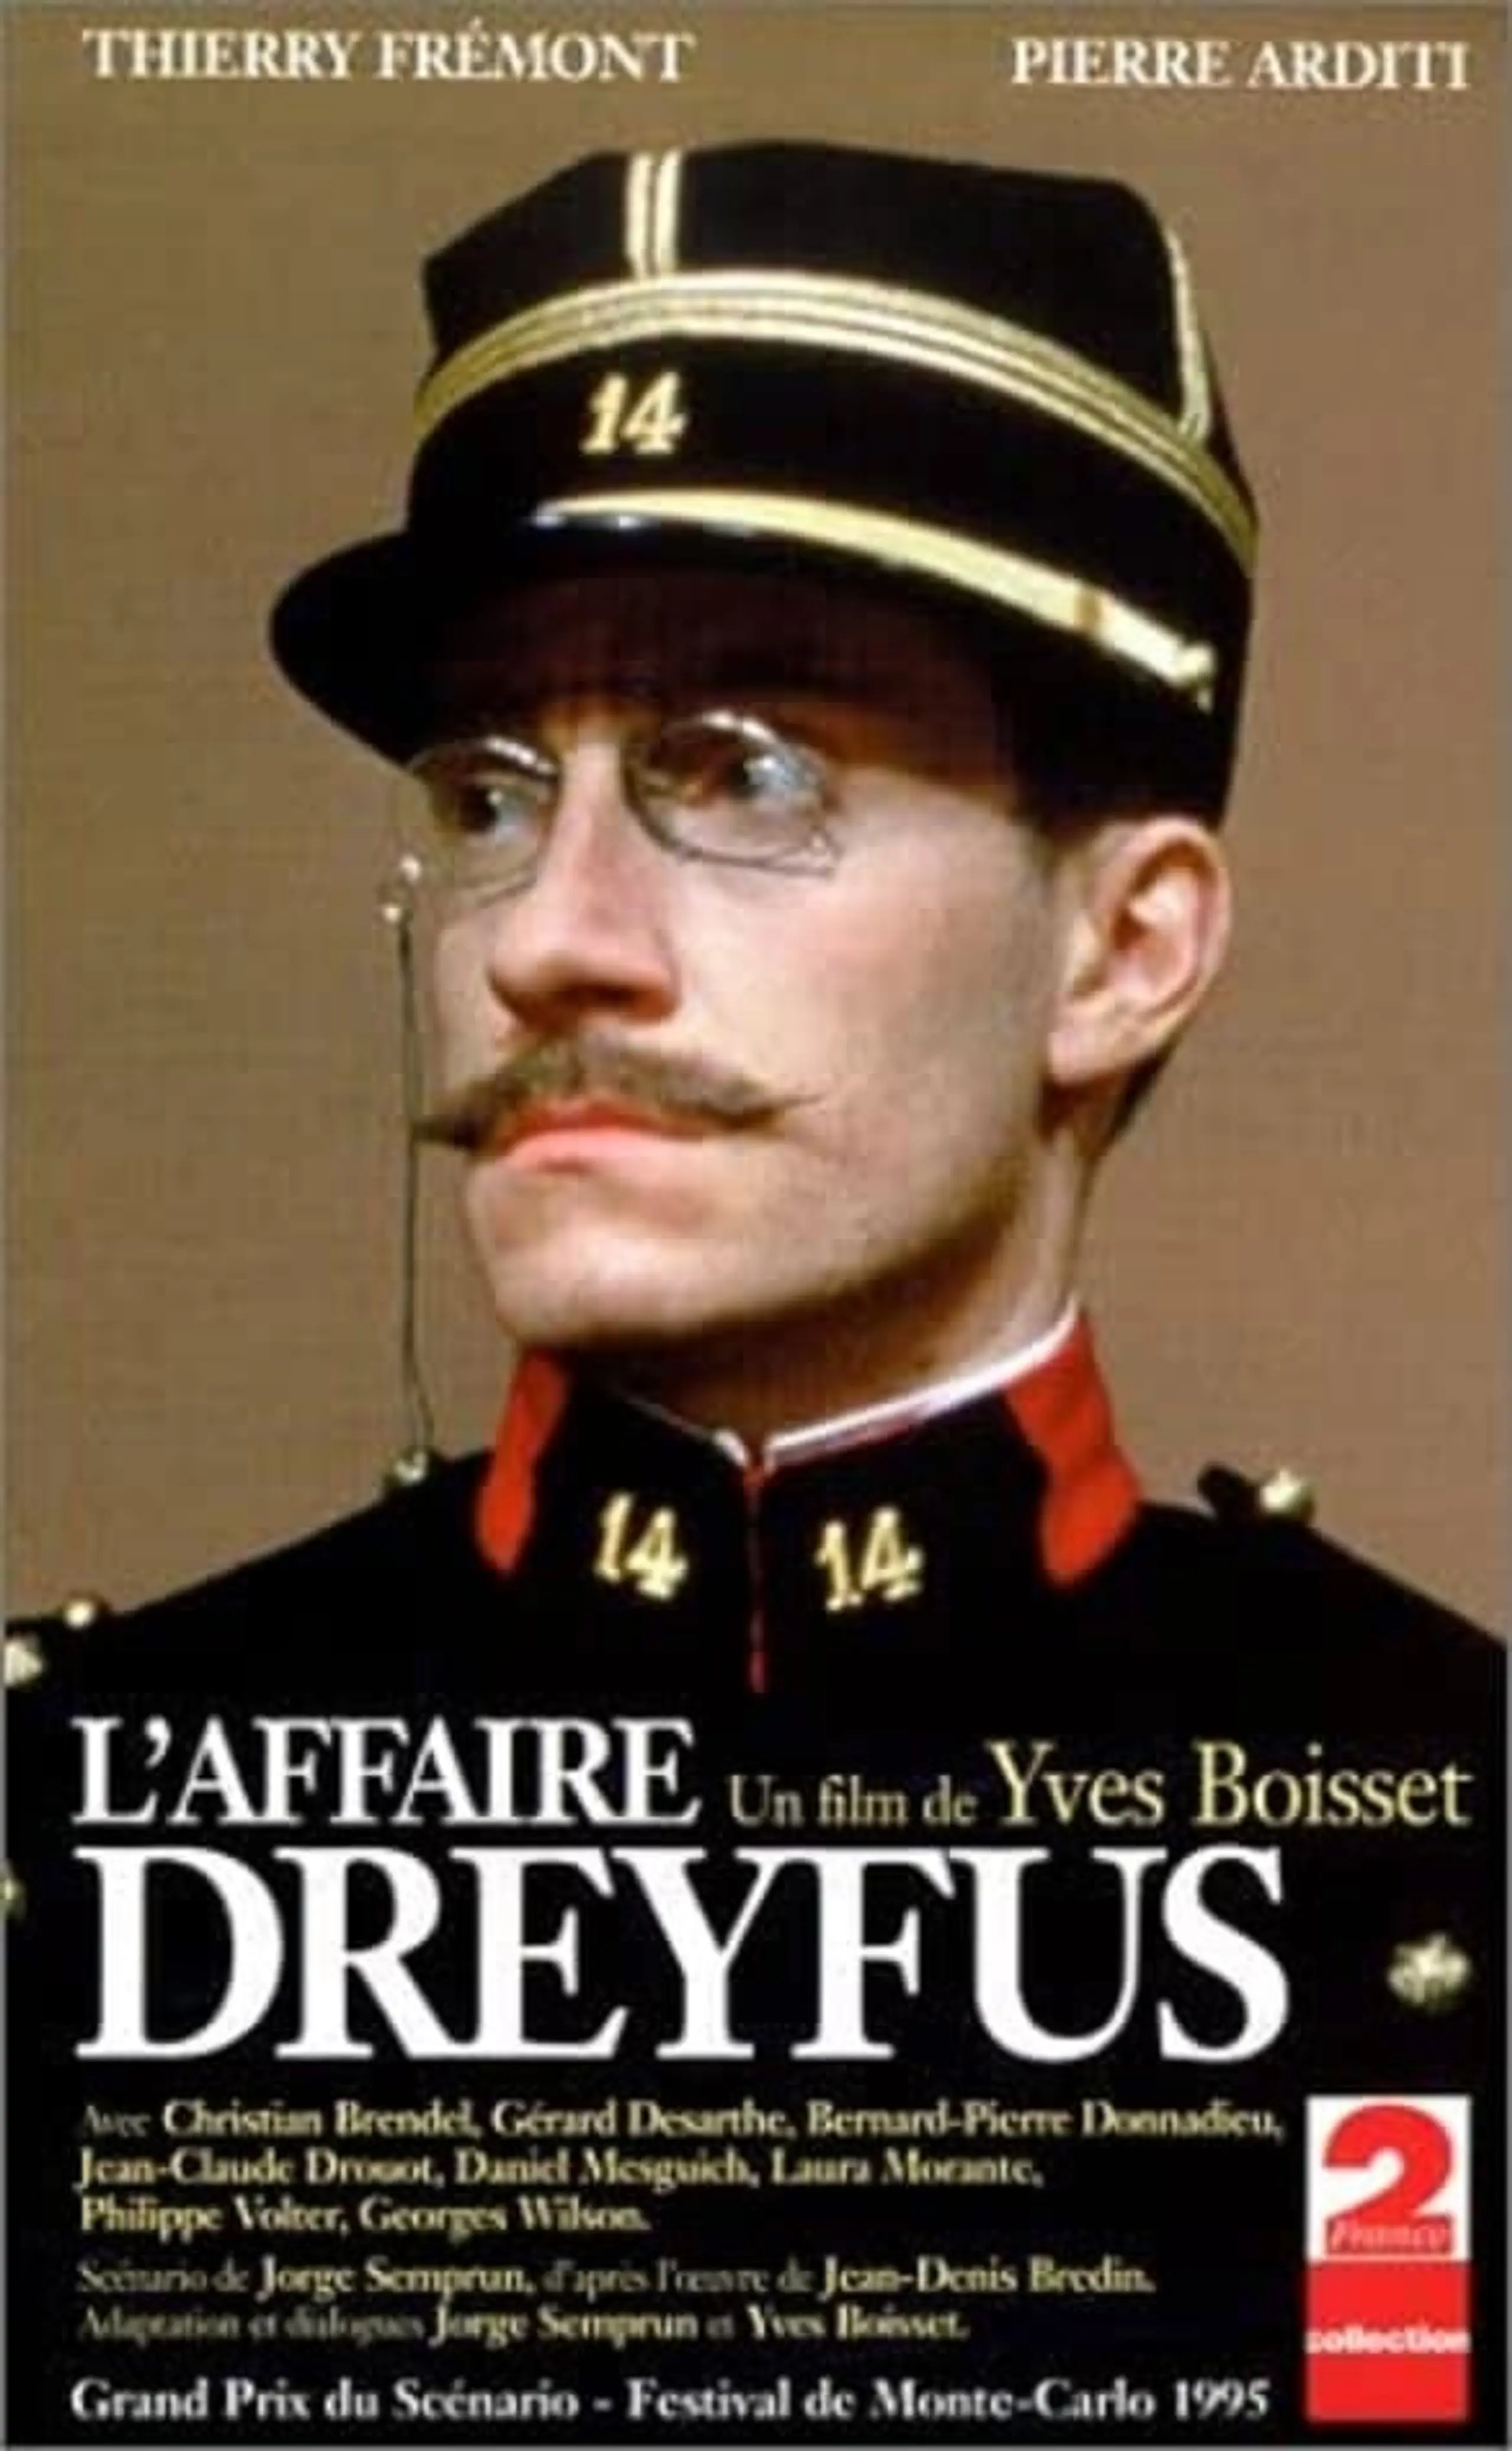 Affäre Dreyfus